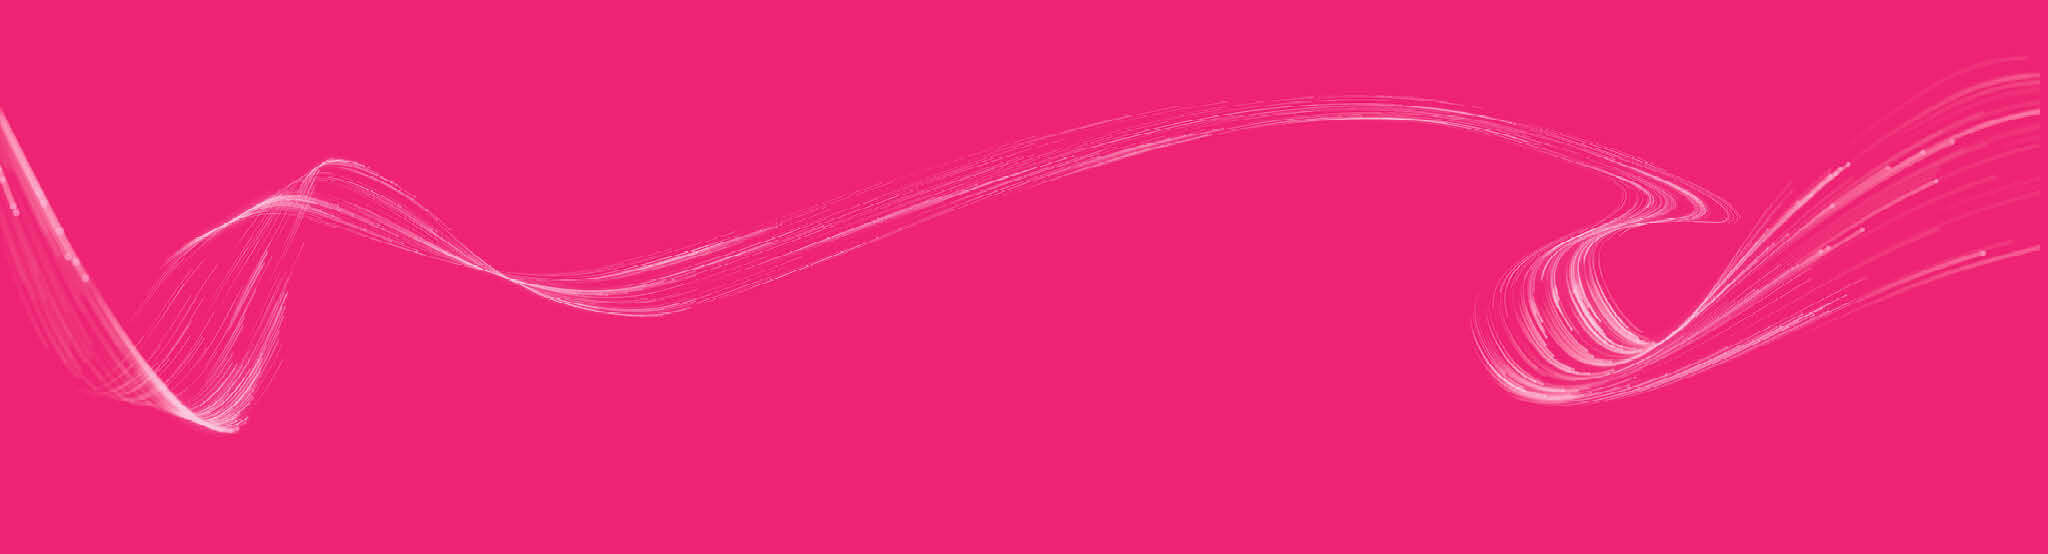 brainlab-background-pink-trails.jpg